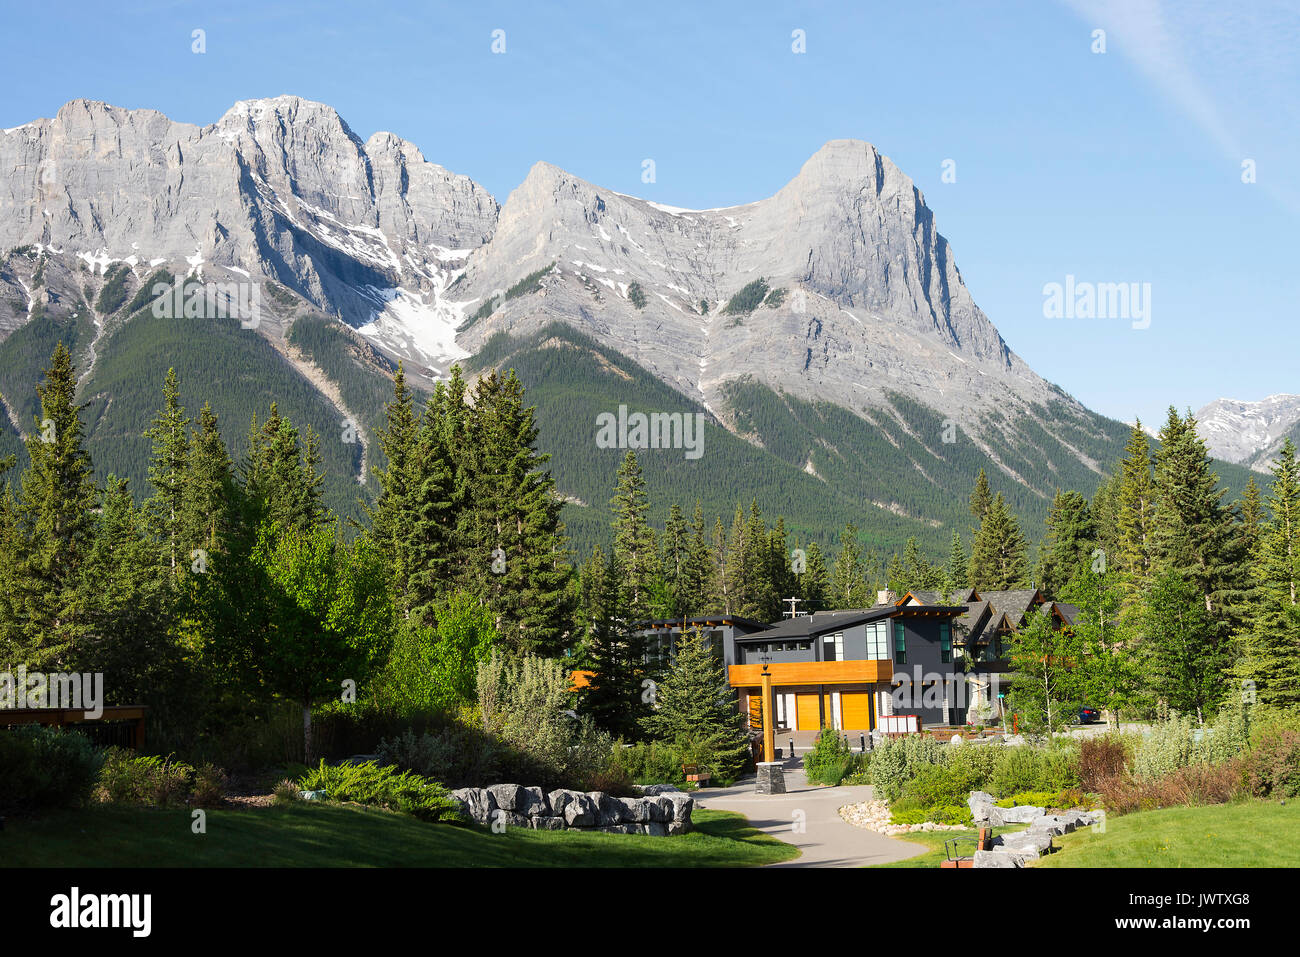 Beau logement et scènes de Rocky Mountain et forêt de pins à Canmore Banff National Park Alberta Canada Banque D'Images